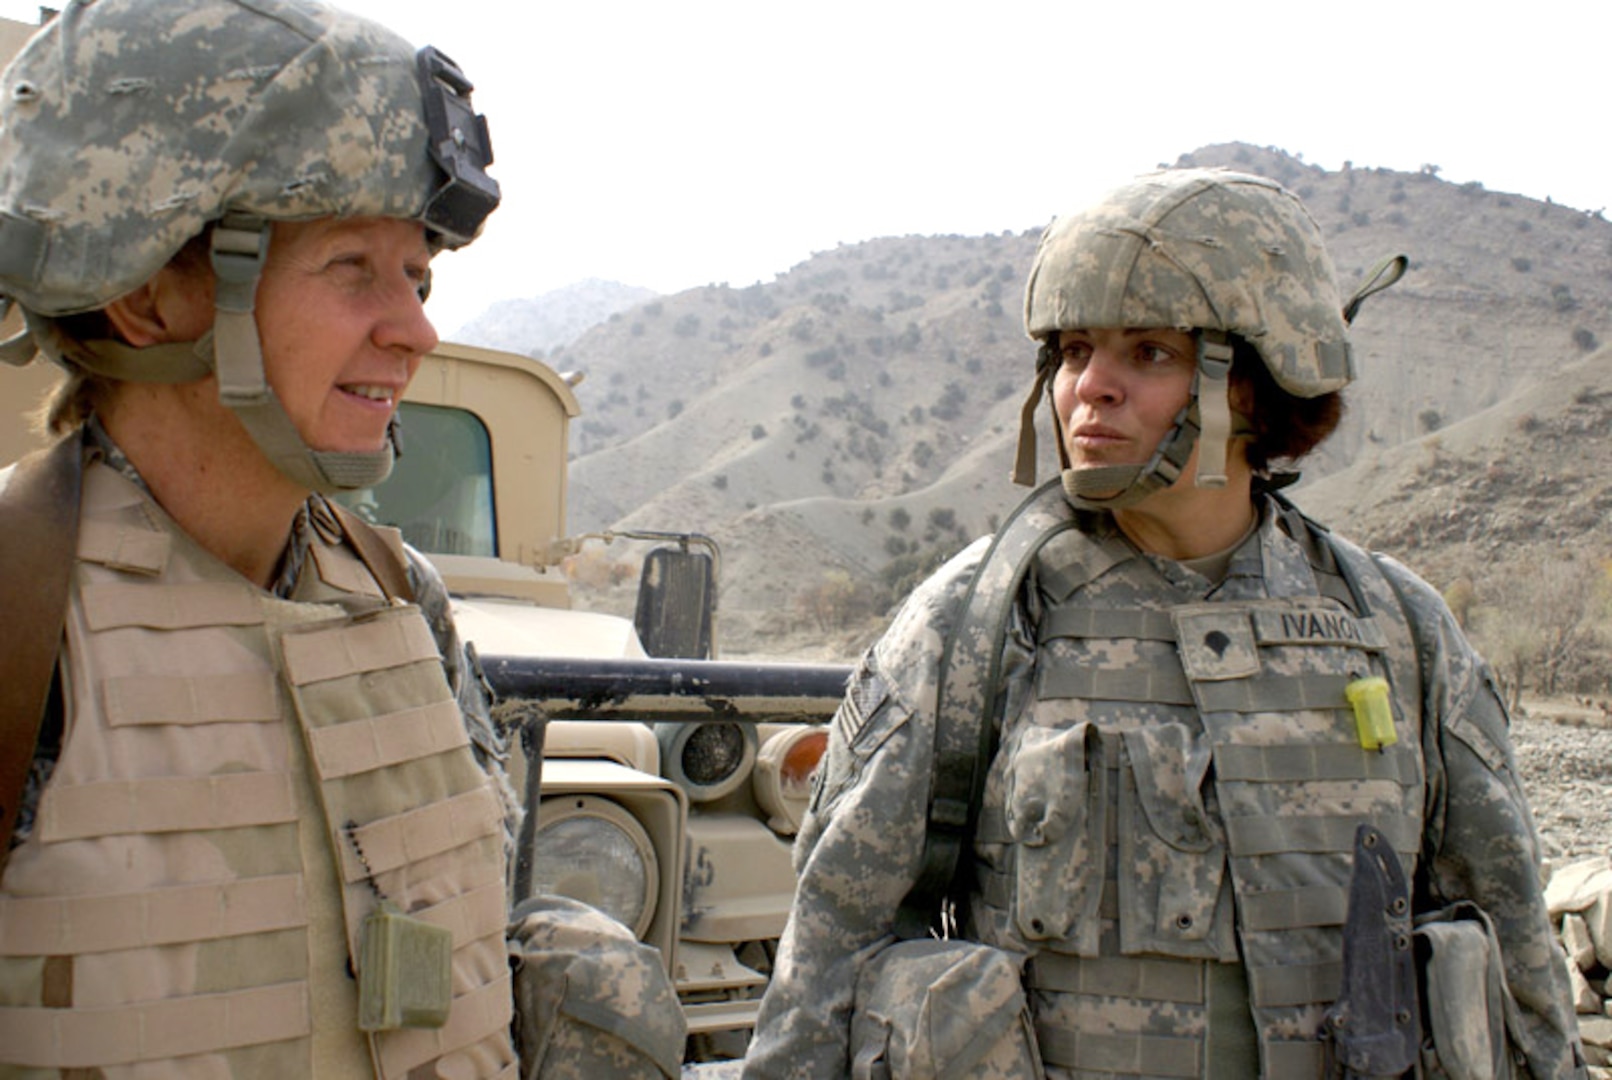 Breaking gender barriers in war: Female combat medics earn respect